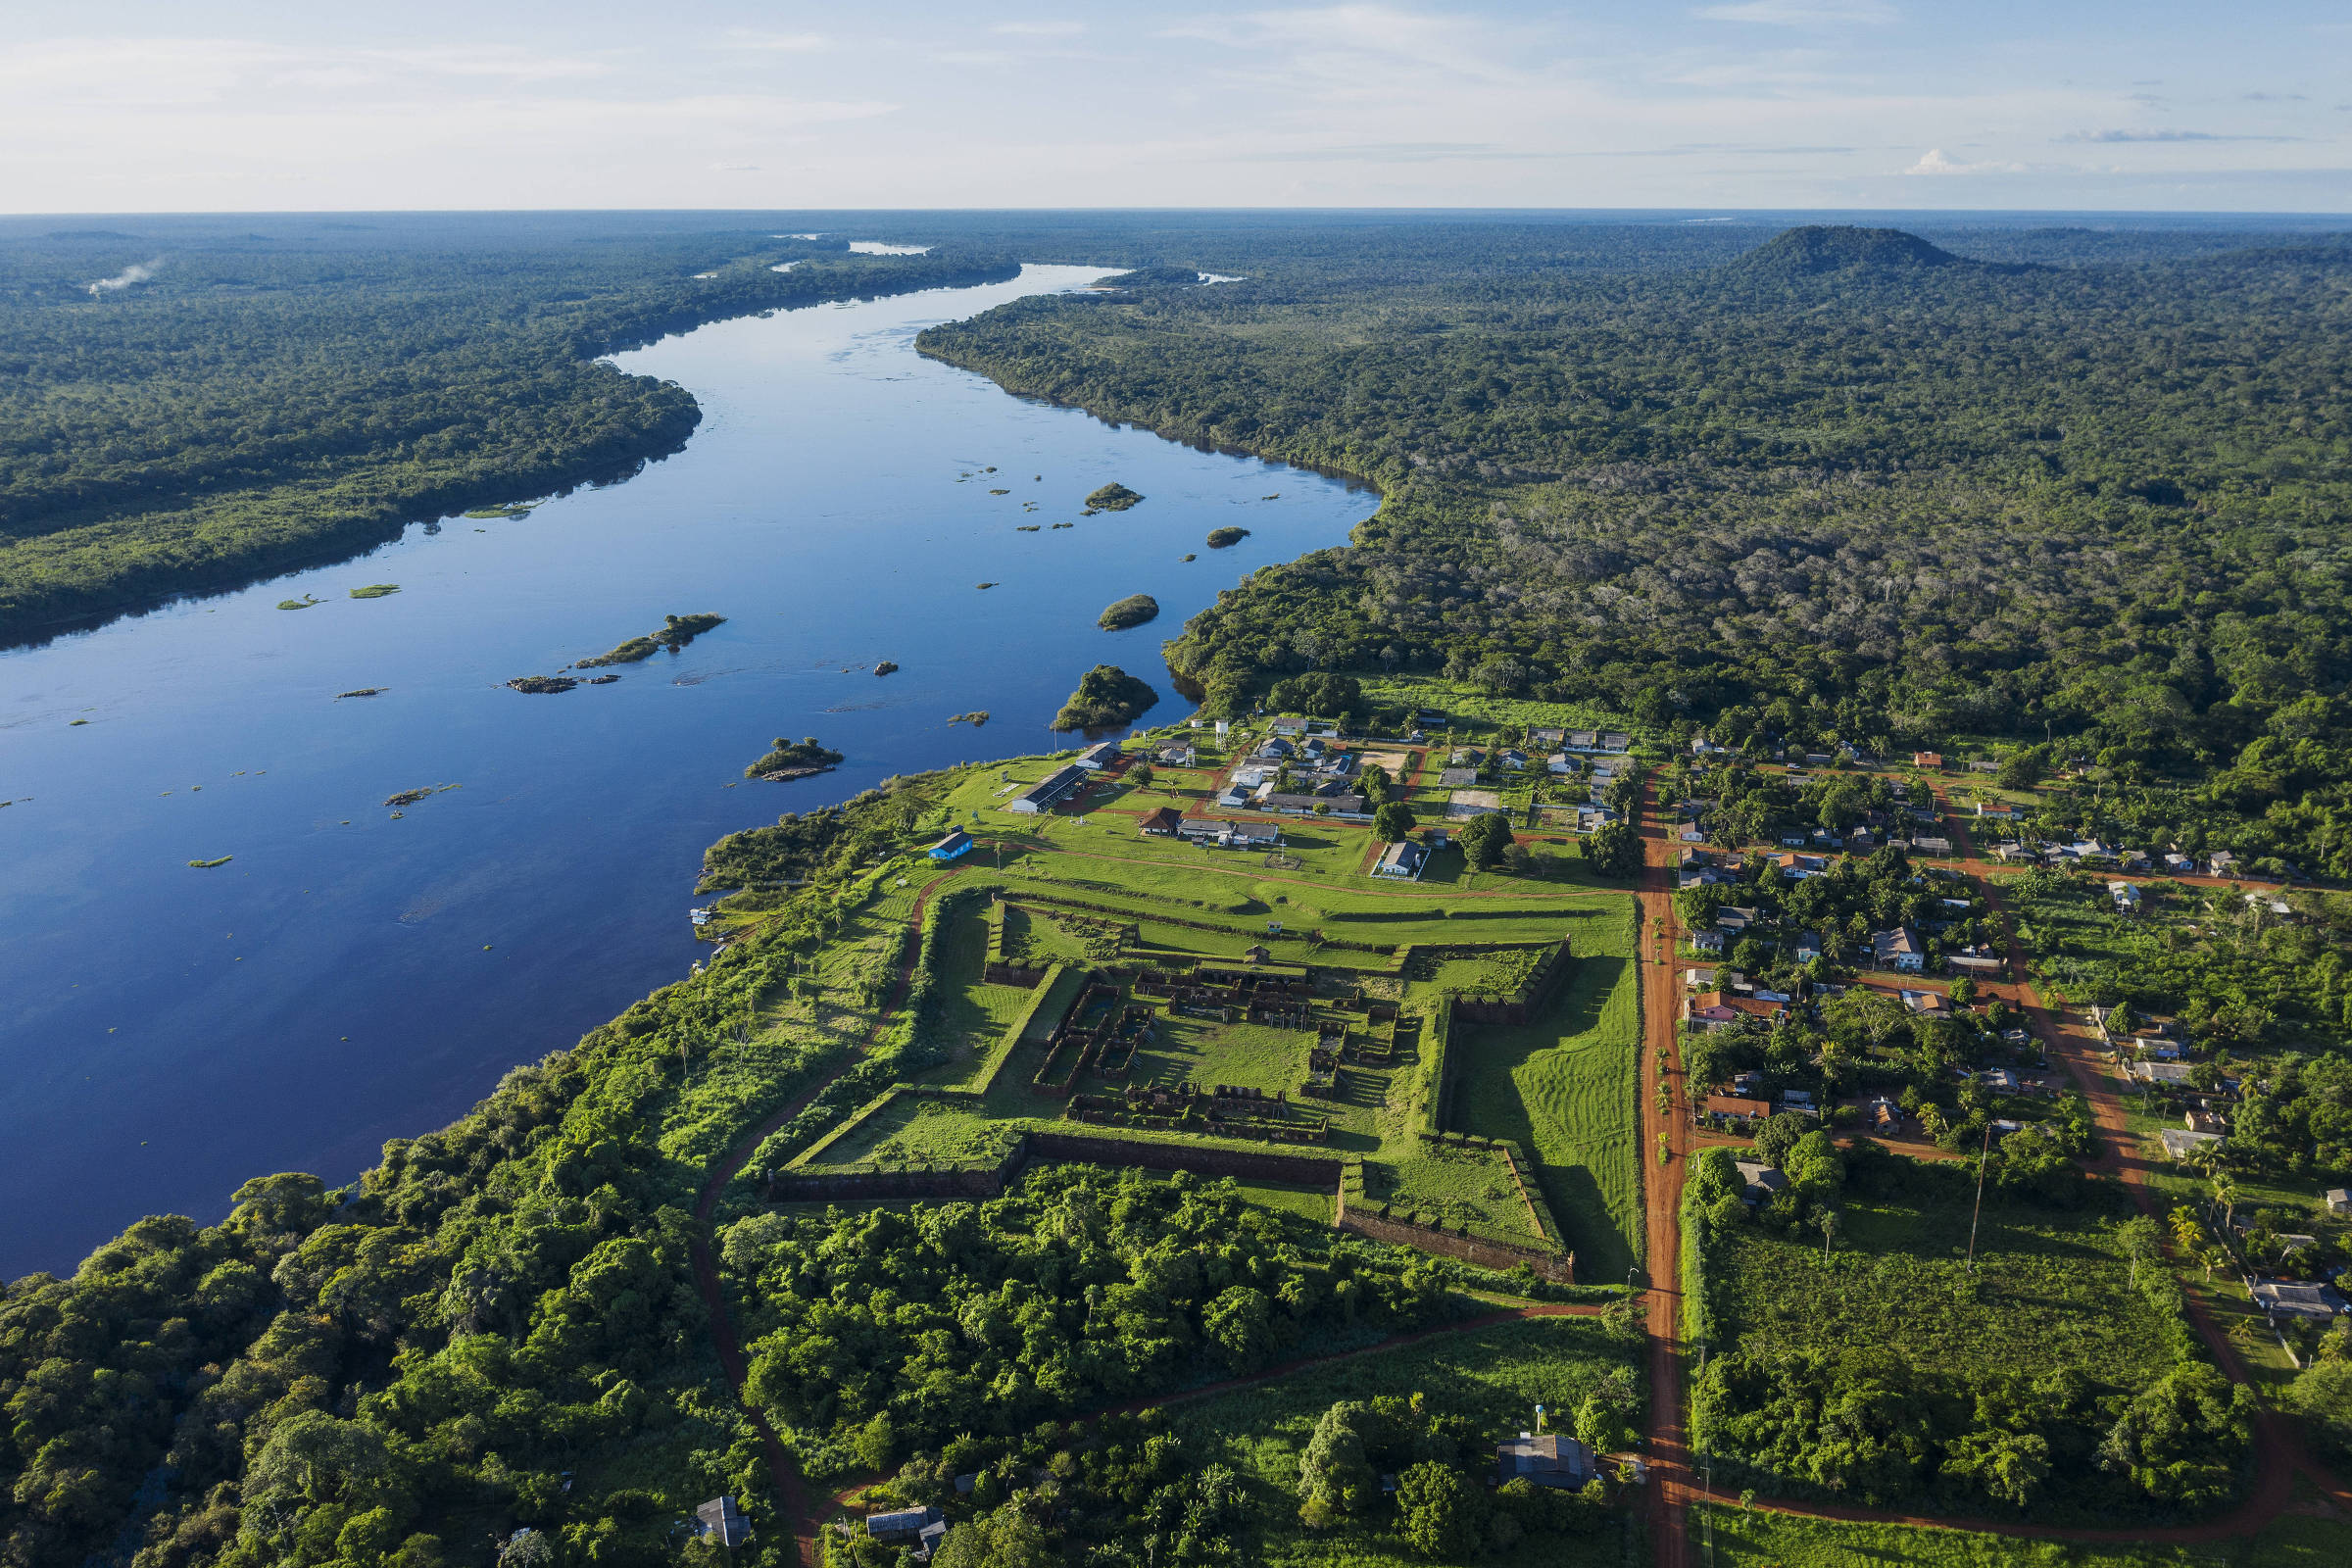 Vista aérea do Real Forte Príncipe da Beira, às margens do rio Guaporé, em Rondônia; do lado direito está a comunidade quilombola de mesmo nome